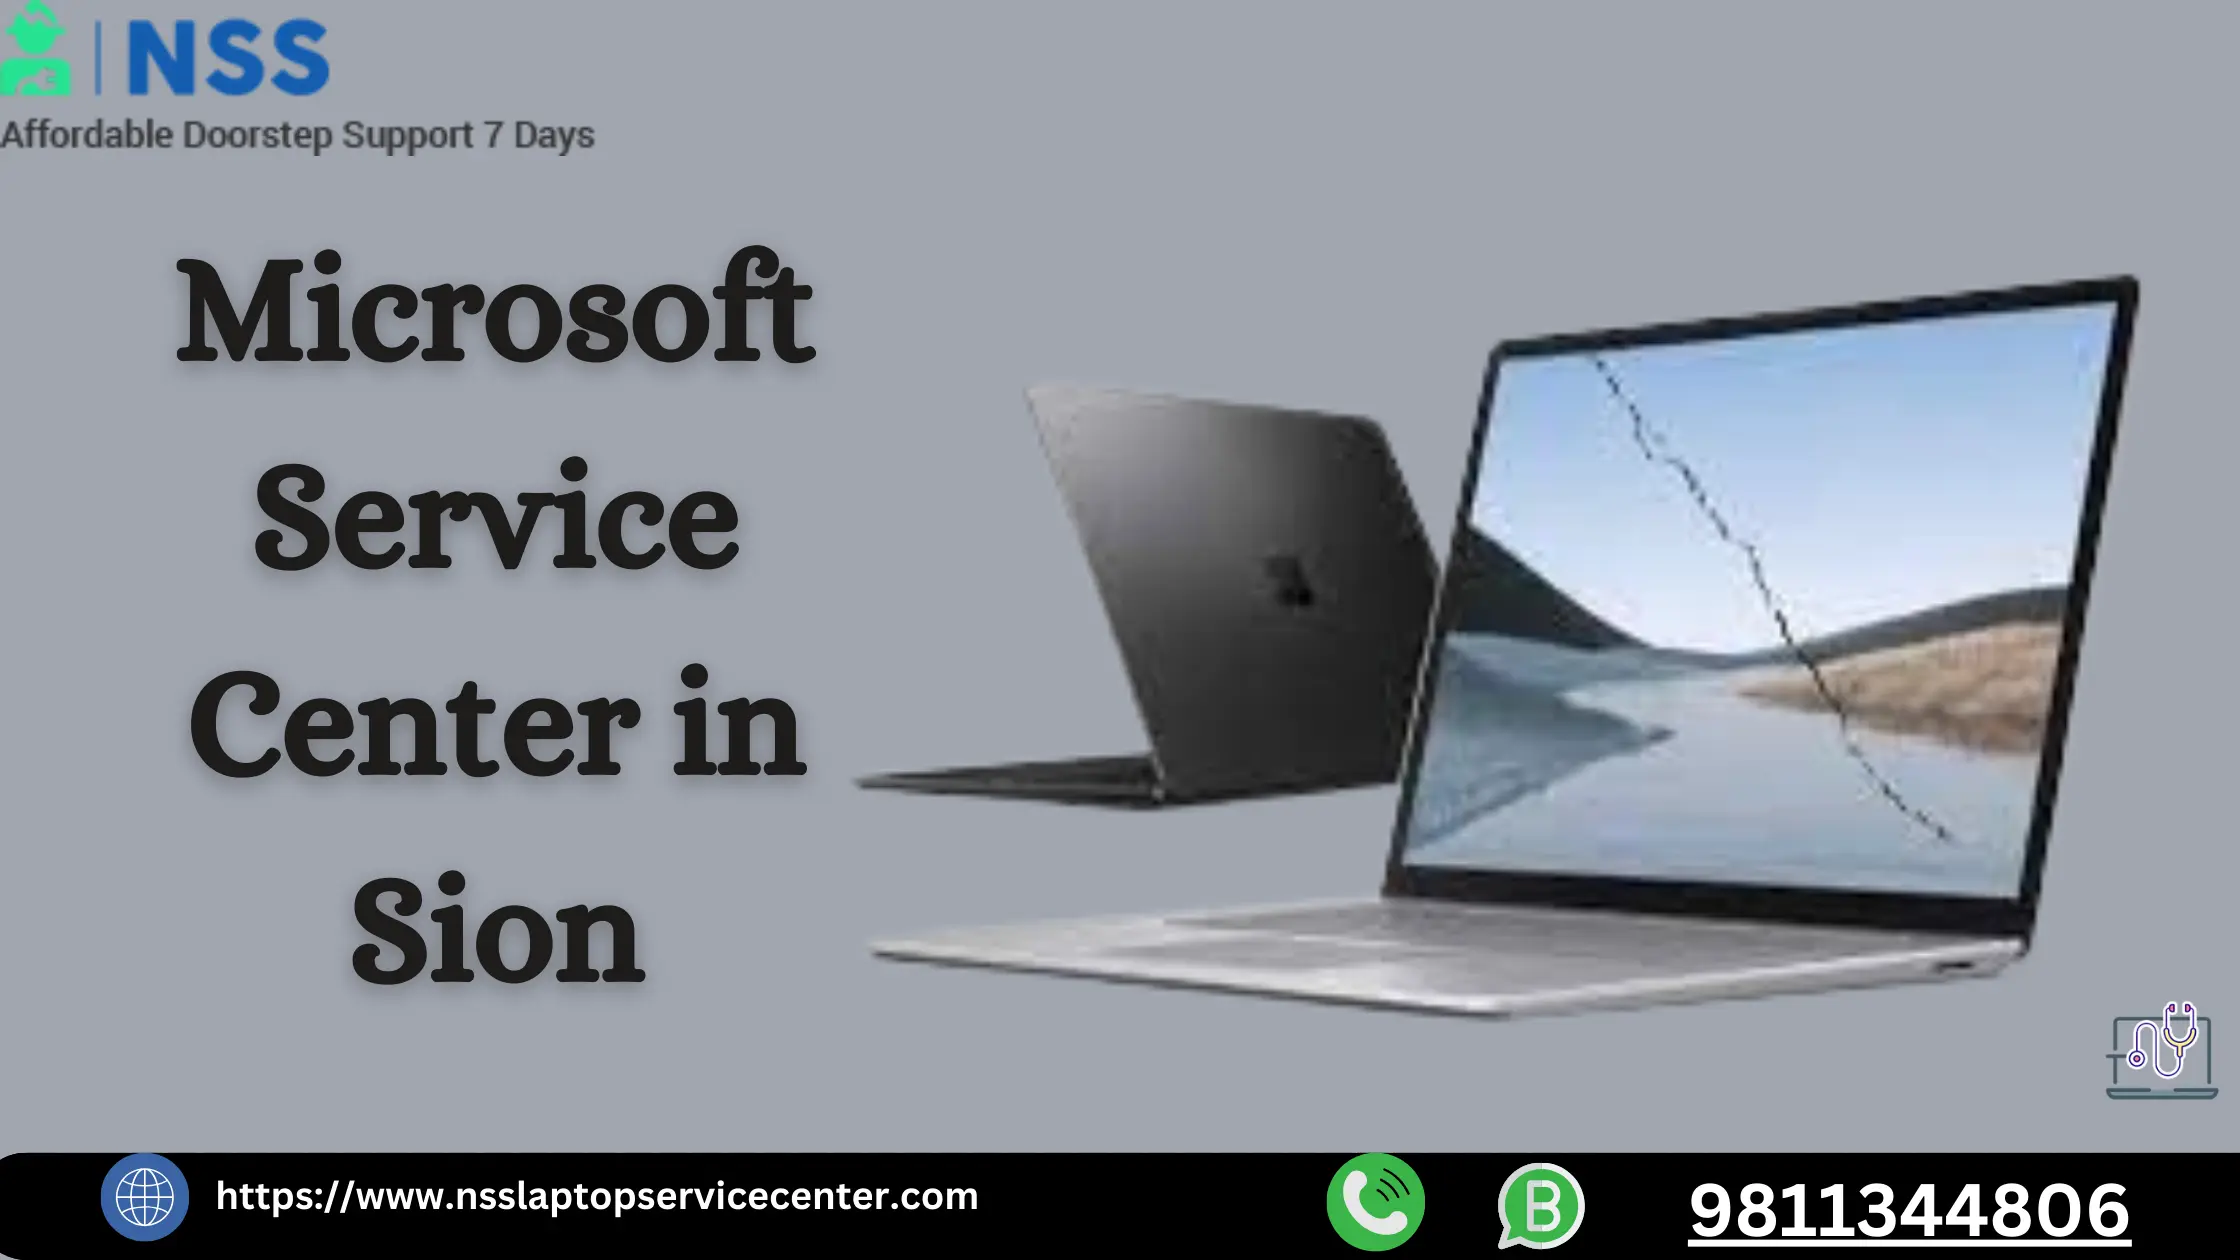 Microsoft Service Center in Sion Near Mumbai